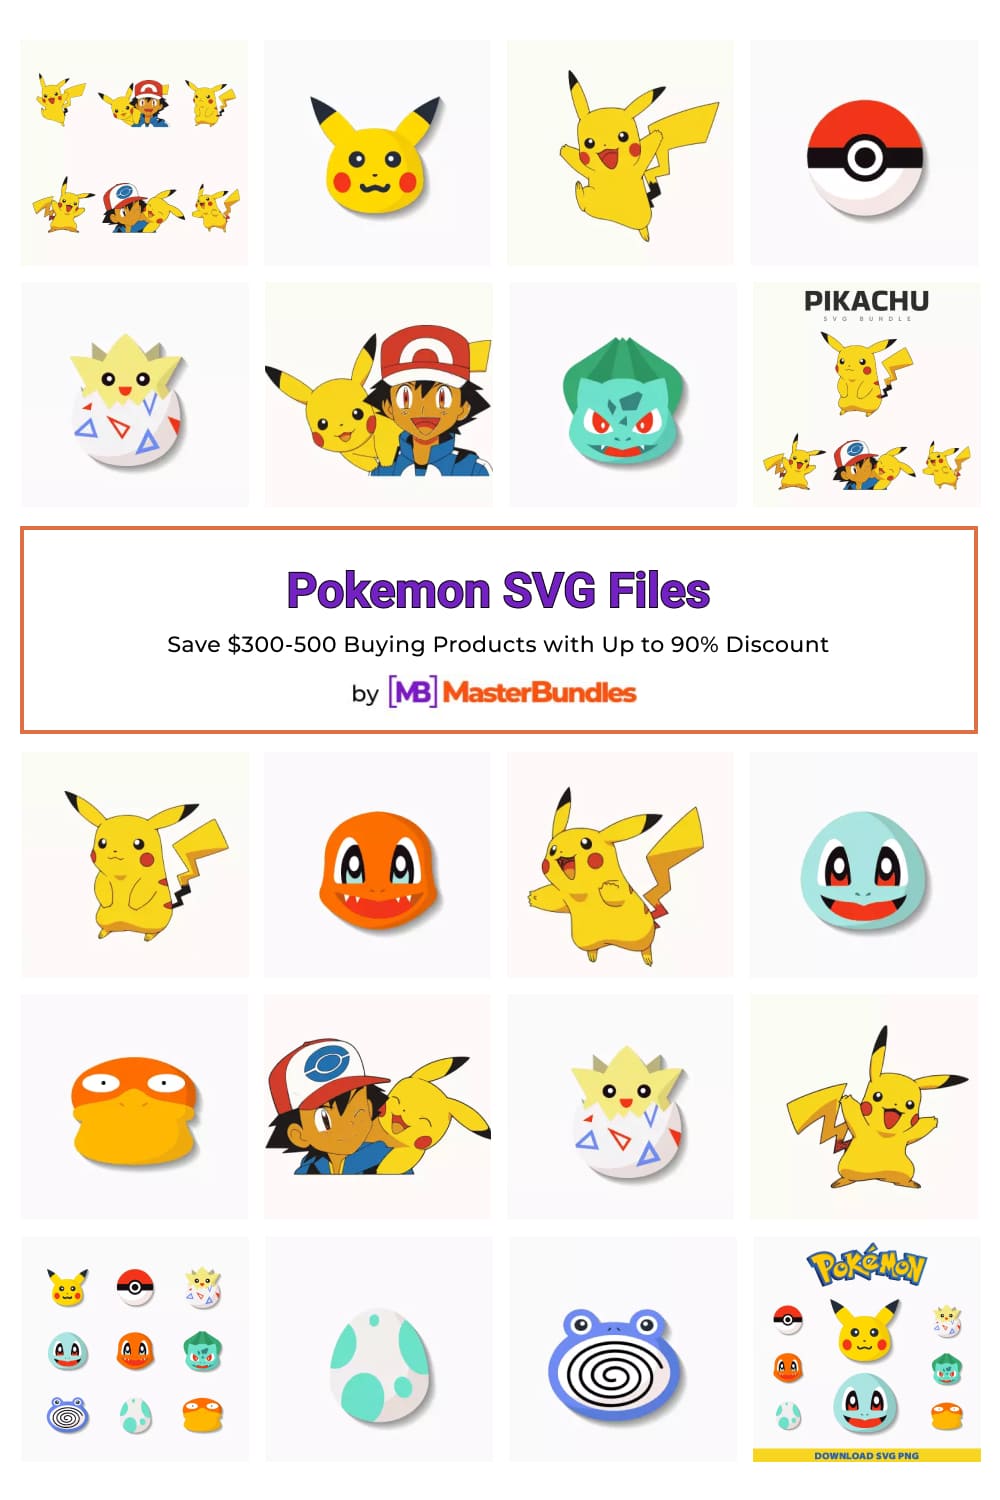 Pokemon SVG Files for Pinterest.